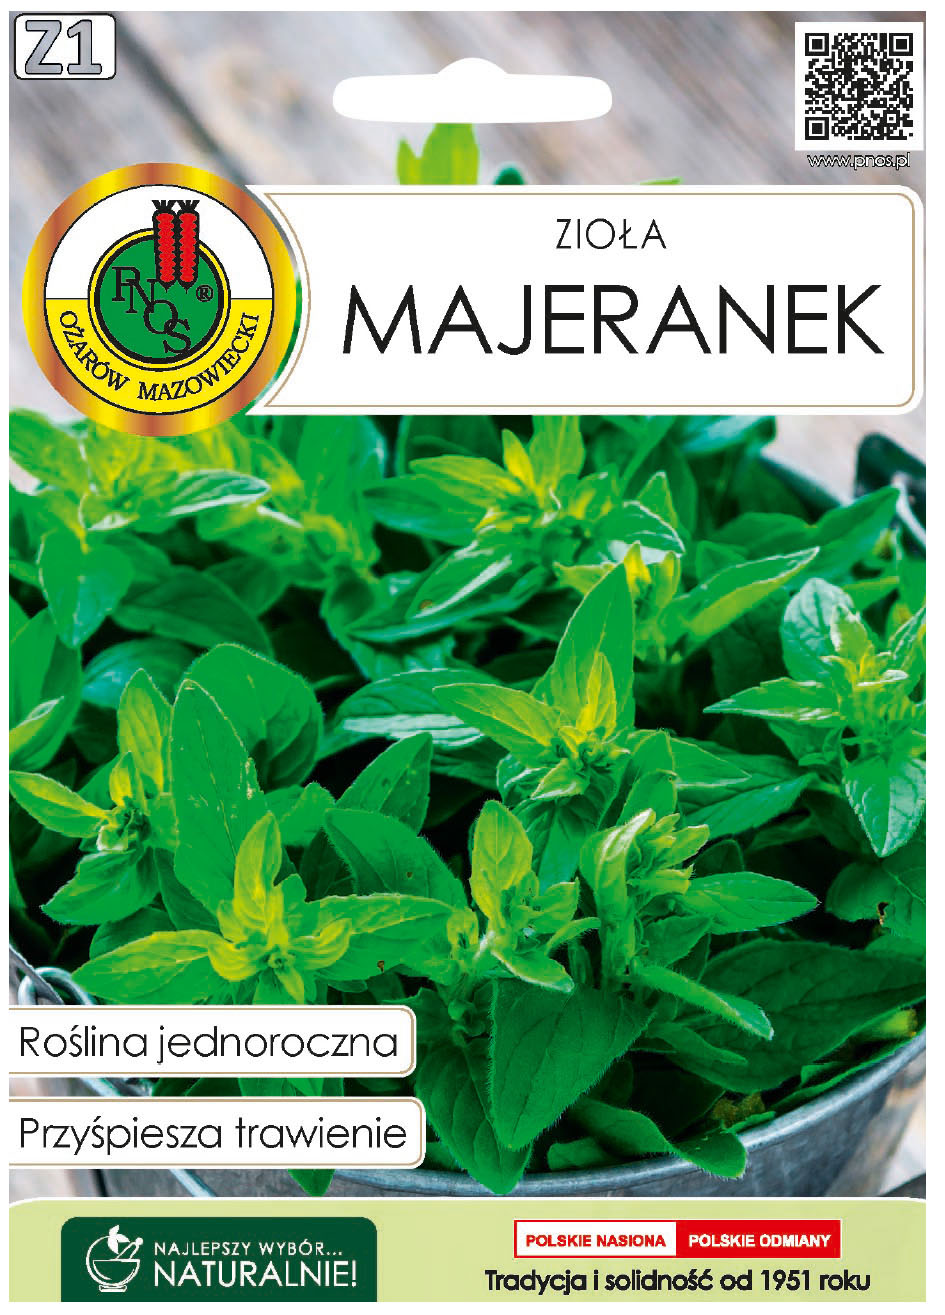 Majeranek to roślina jednoroczna. Zawiera olejki eteryczne, garbniki, sole mineralne, kwas askorbinowy (witaminę C), karoten.